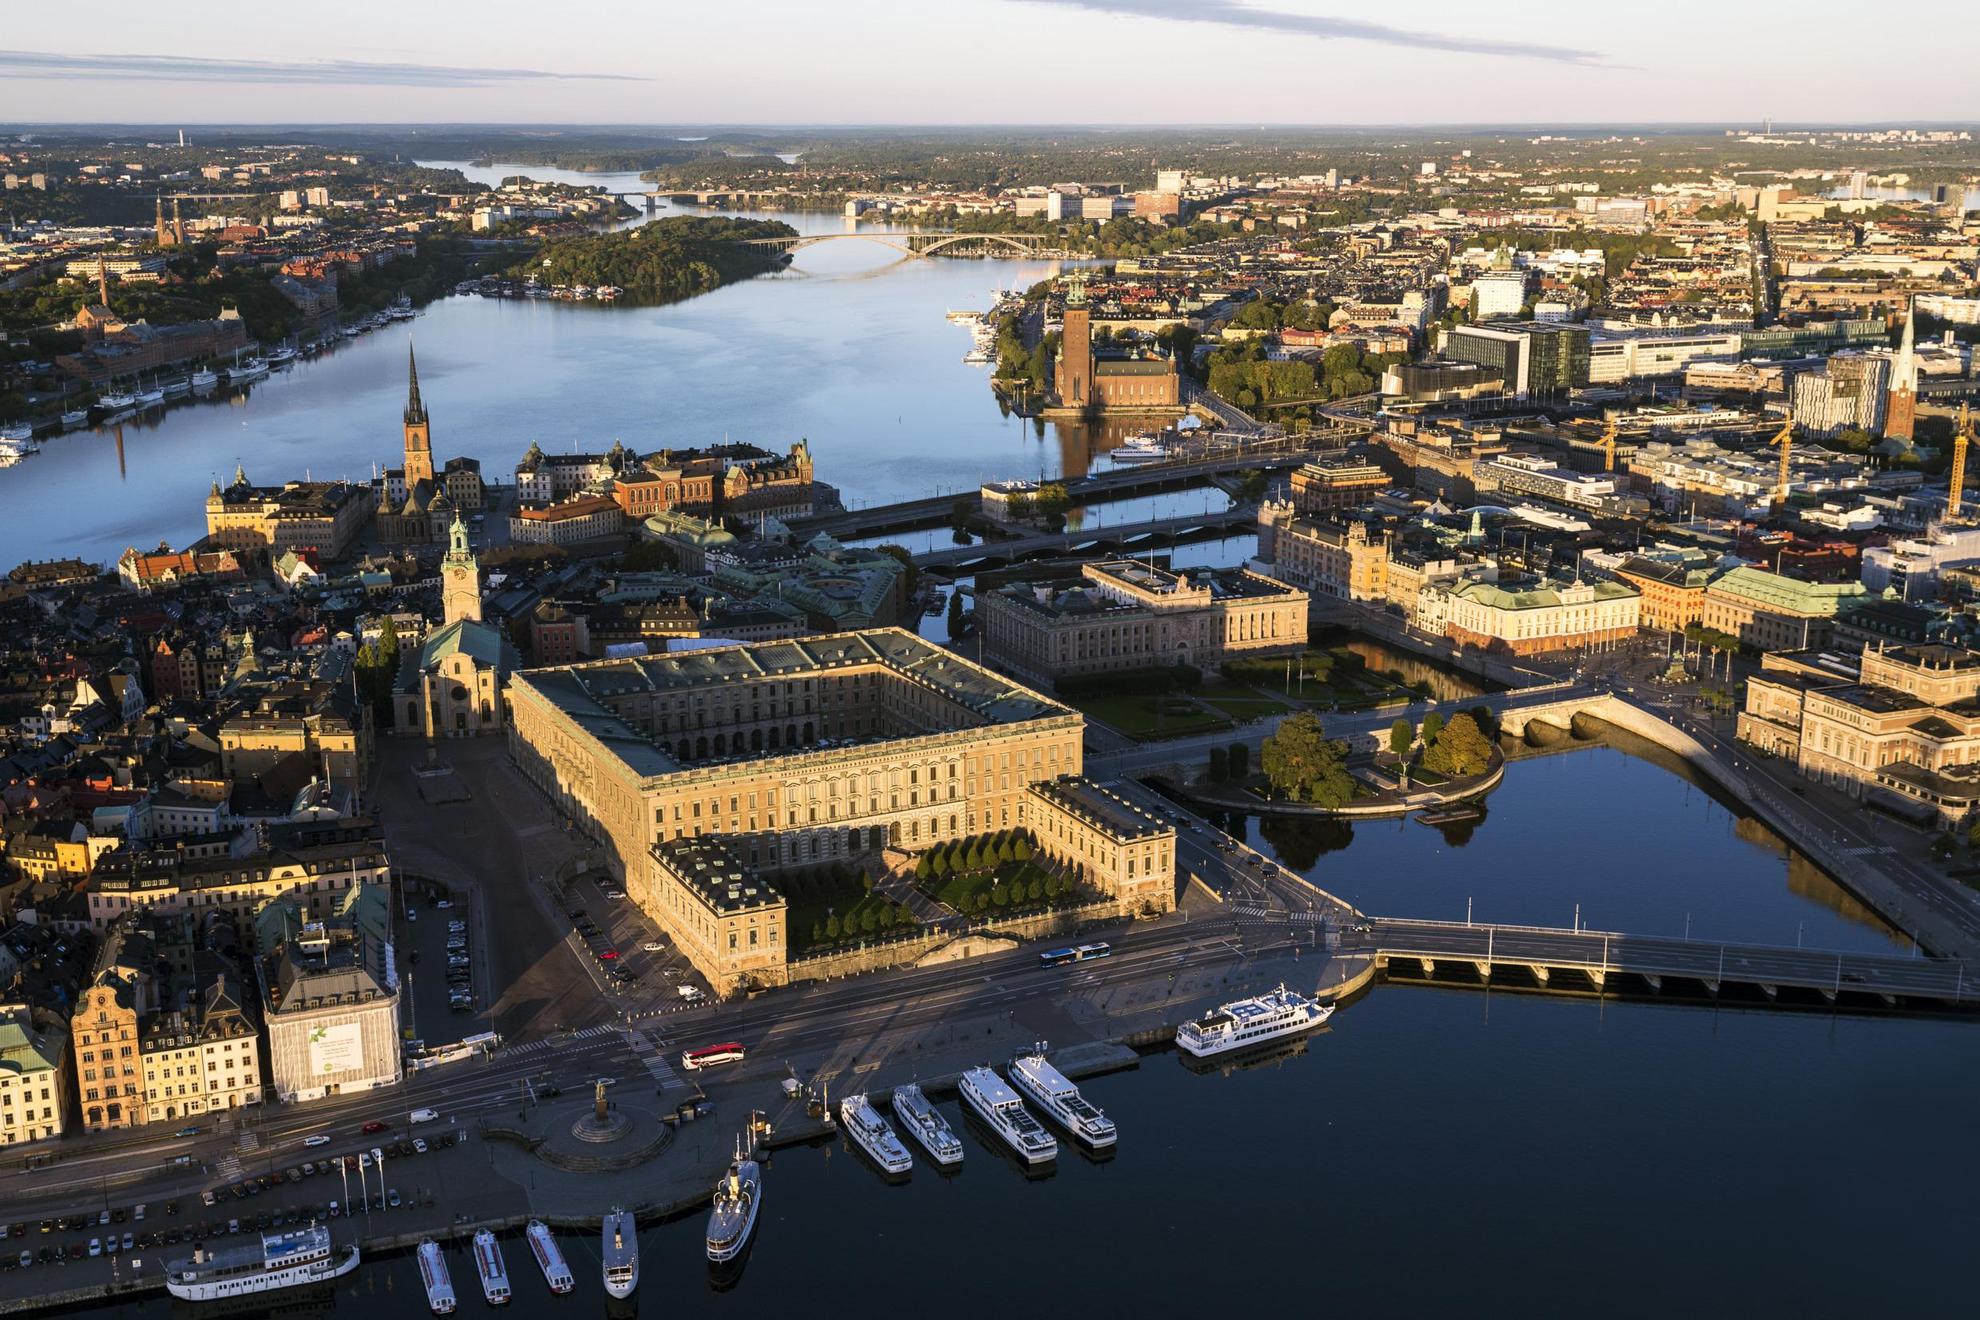 Luchtfoto uitzicht over de stad Stockholm en het omringende water, het Koninklijk Paleis, stadhuizen en andere gebouwen.